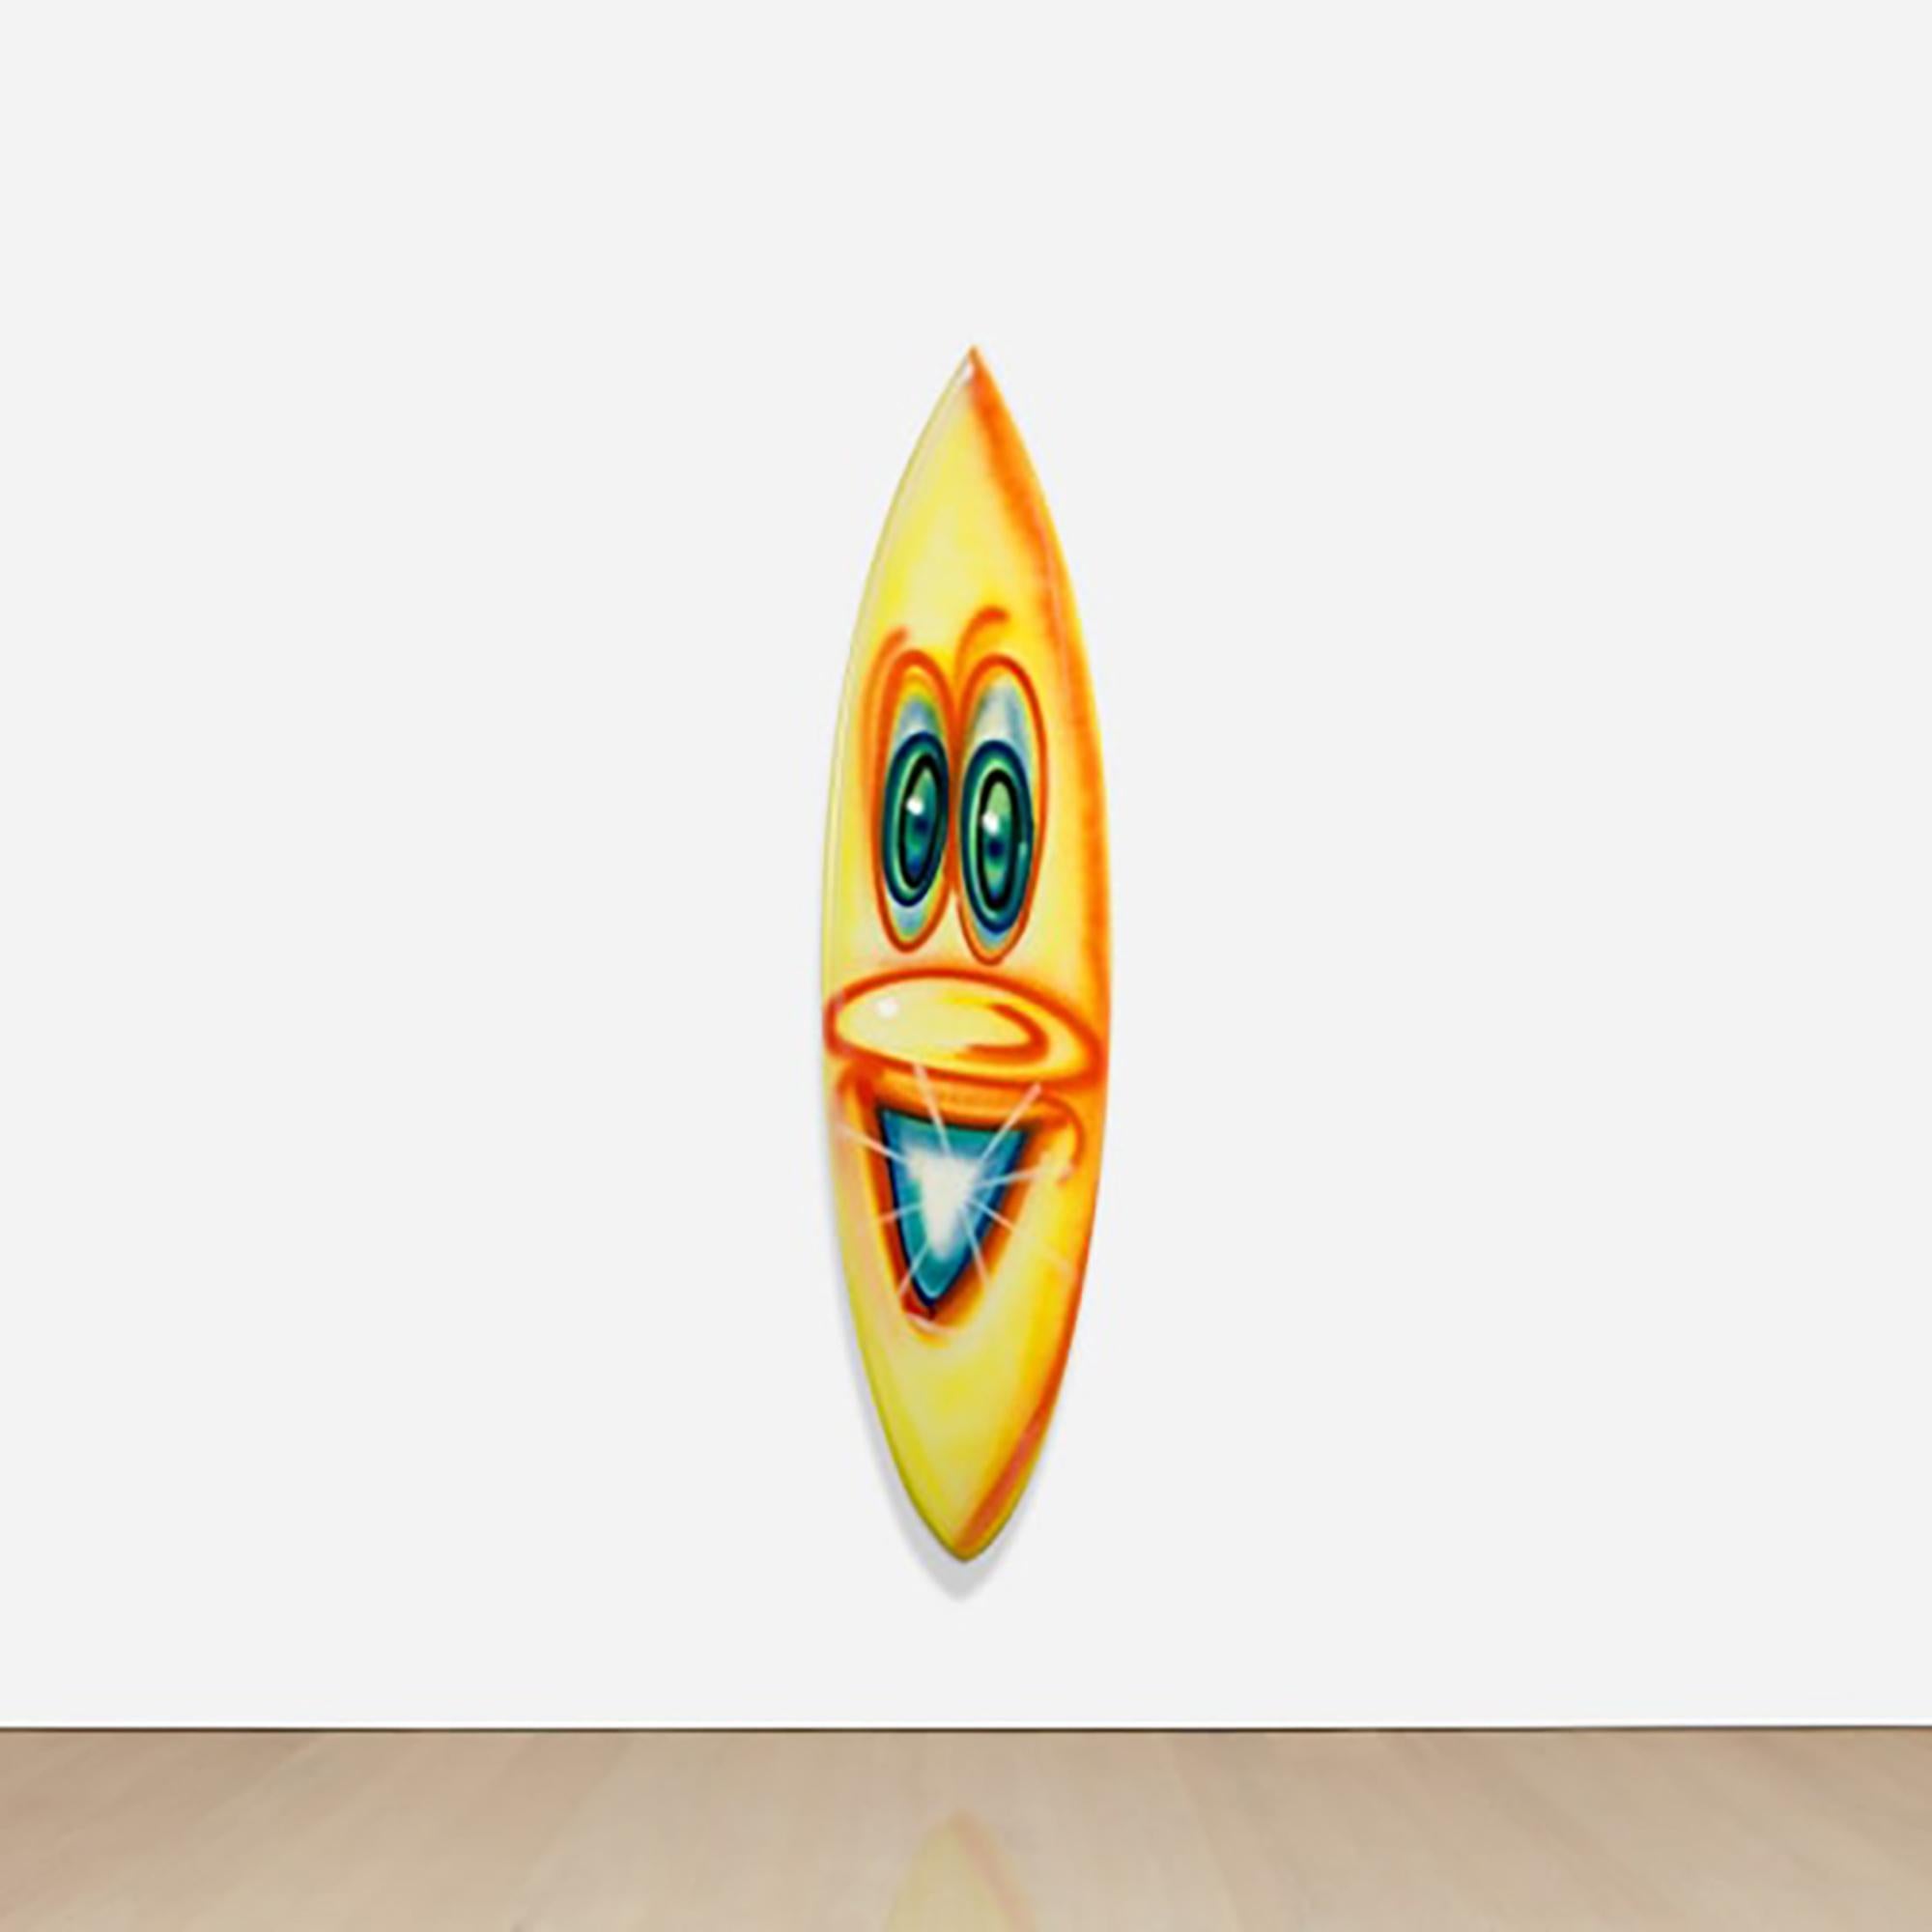 Artiste :  Kenny Scharf 
Titre : Planche de surf unique
Taille : 195,6 x 50,8 x 6,4 cm. (77 x 20 x 2 1/2 in.)
Moyen :  Peinture aérosol sur planche de surf
Edition :  Unique Original 1 de 12  
Année :  2021
Notes : Signé et numéroté 